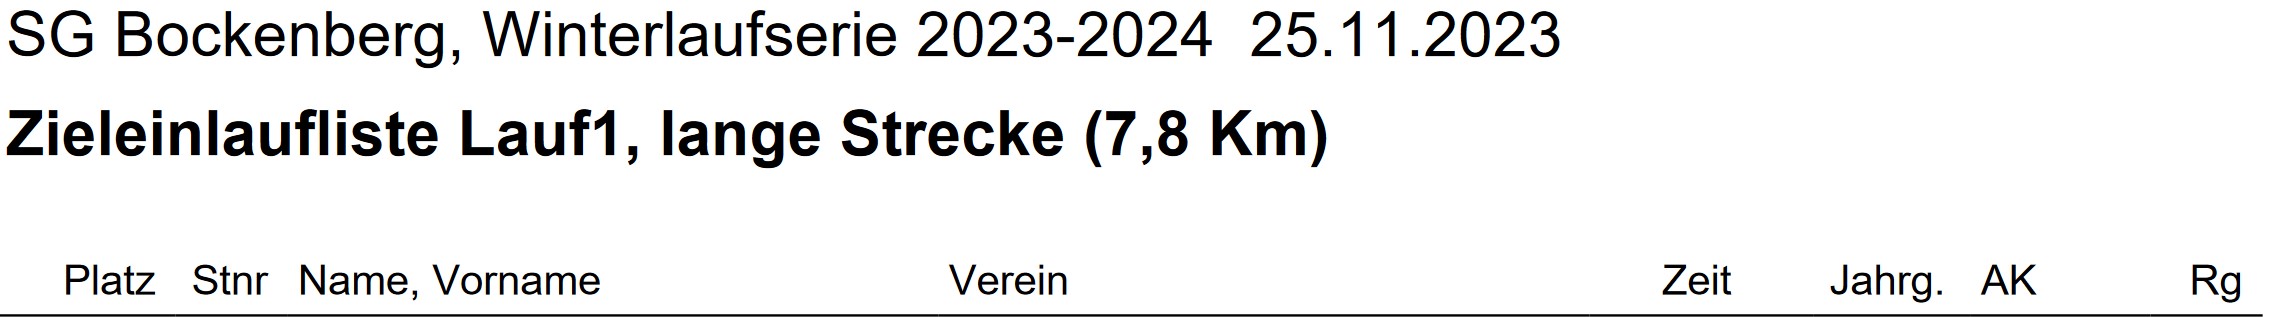 Bockenberg 2023 2024 1. Lauf Ergebnisse Teil 1